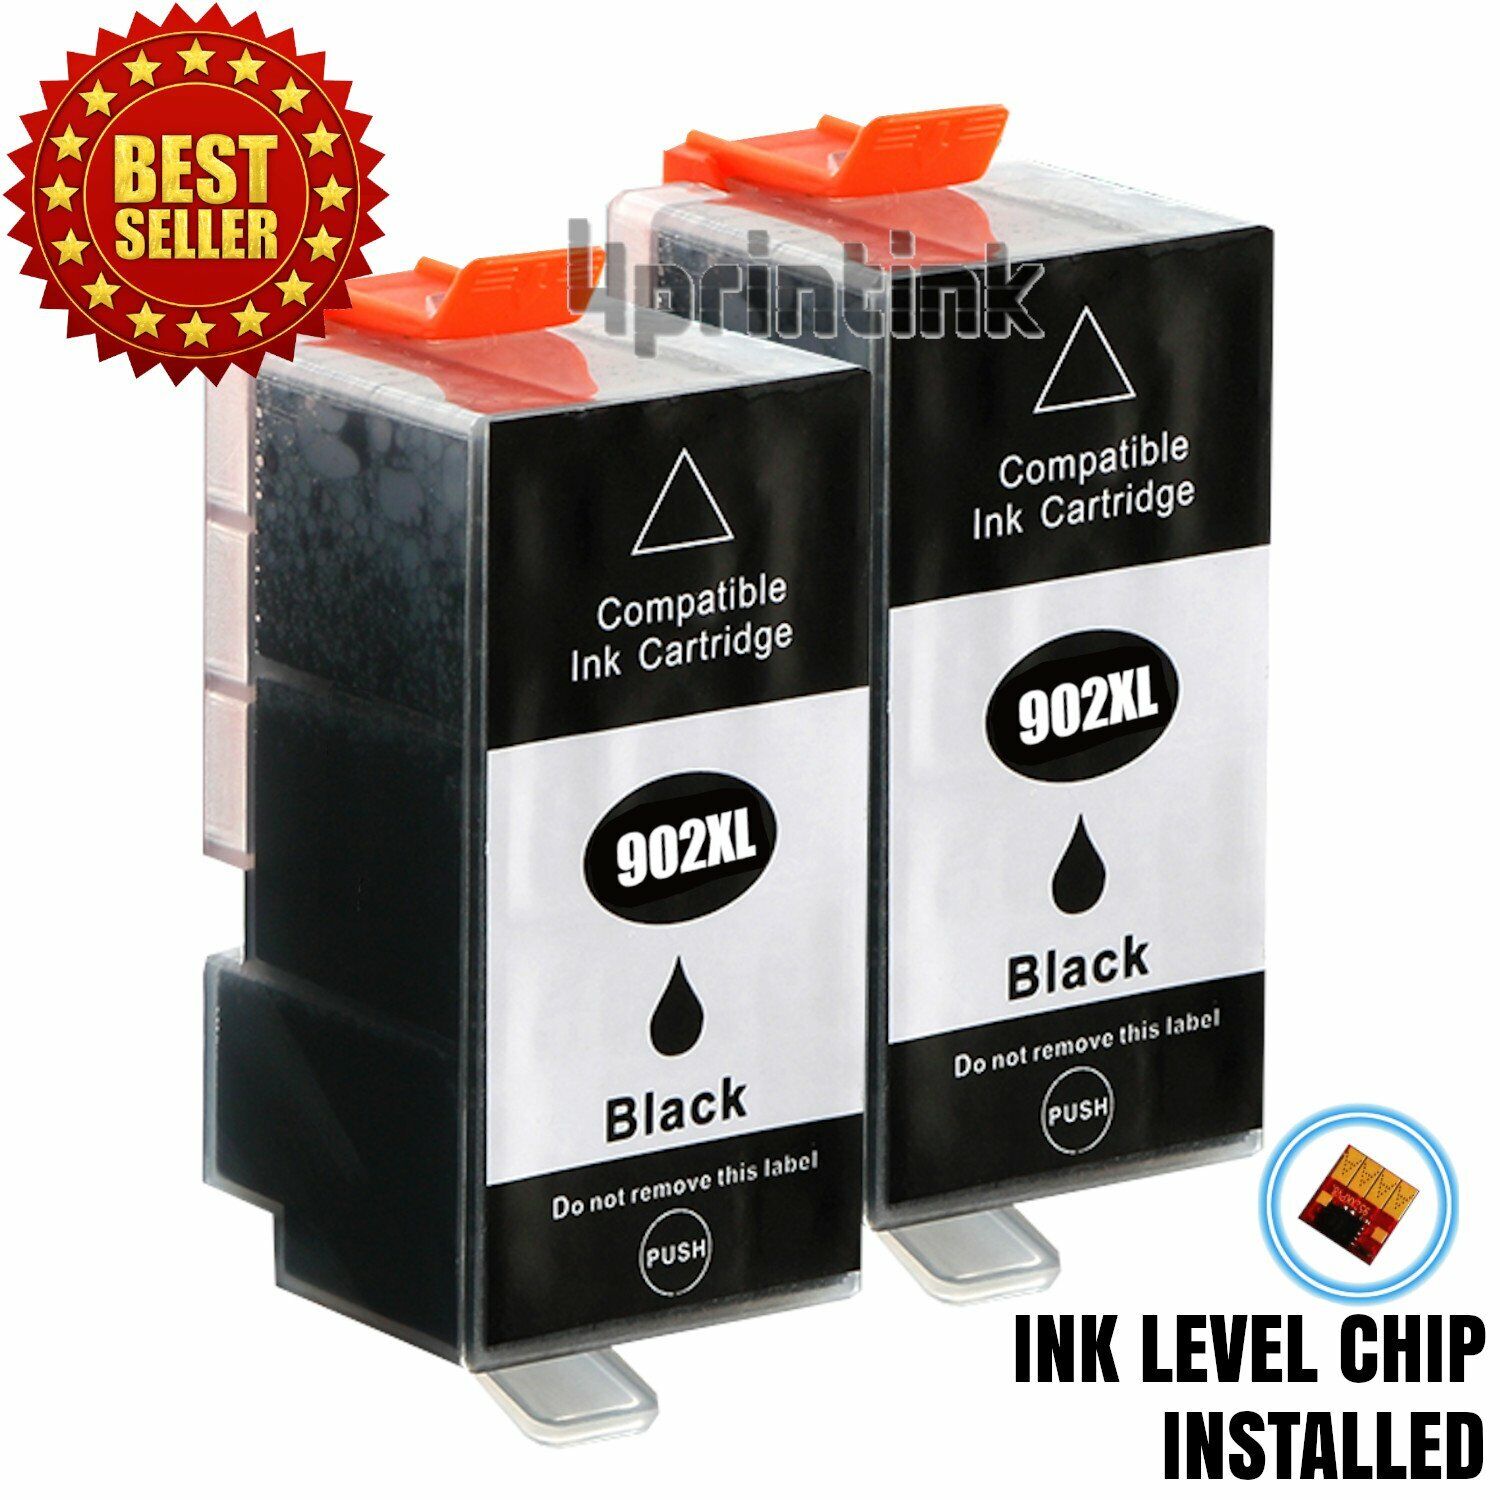 2pk 902XL Black Ink Cartridges for HP 902 Officejet Pro 6960 6968 6970 6975 6978